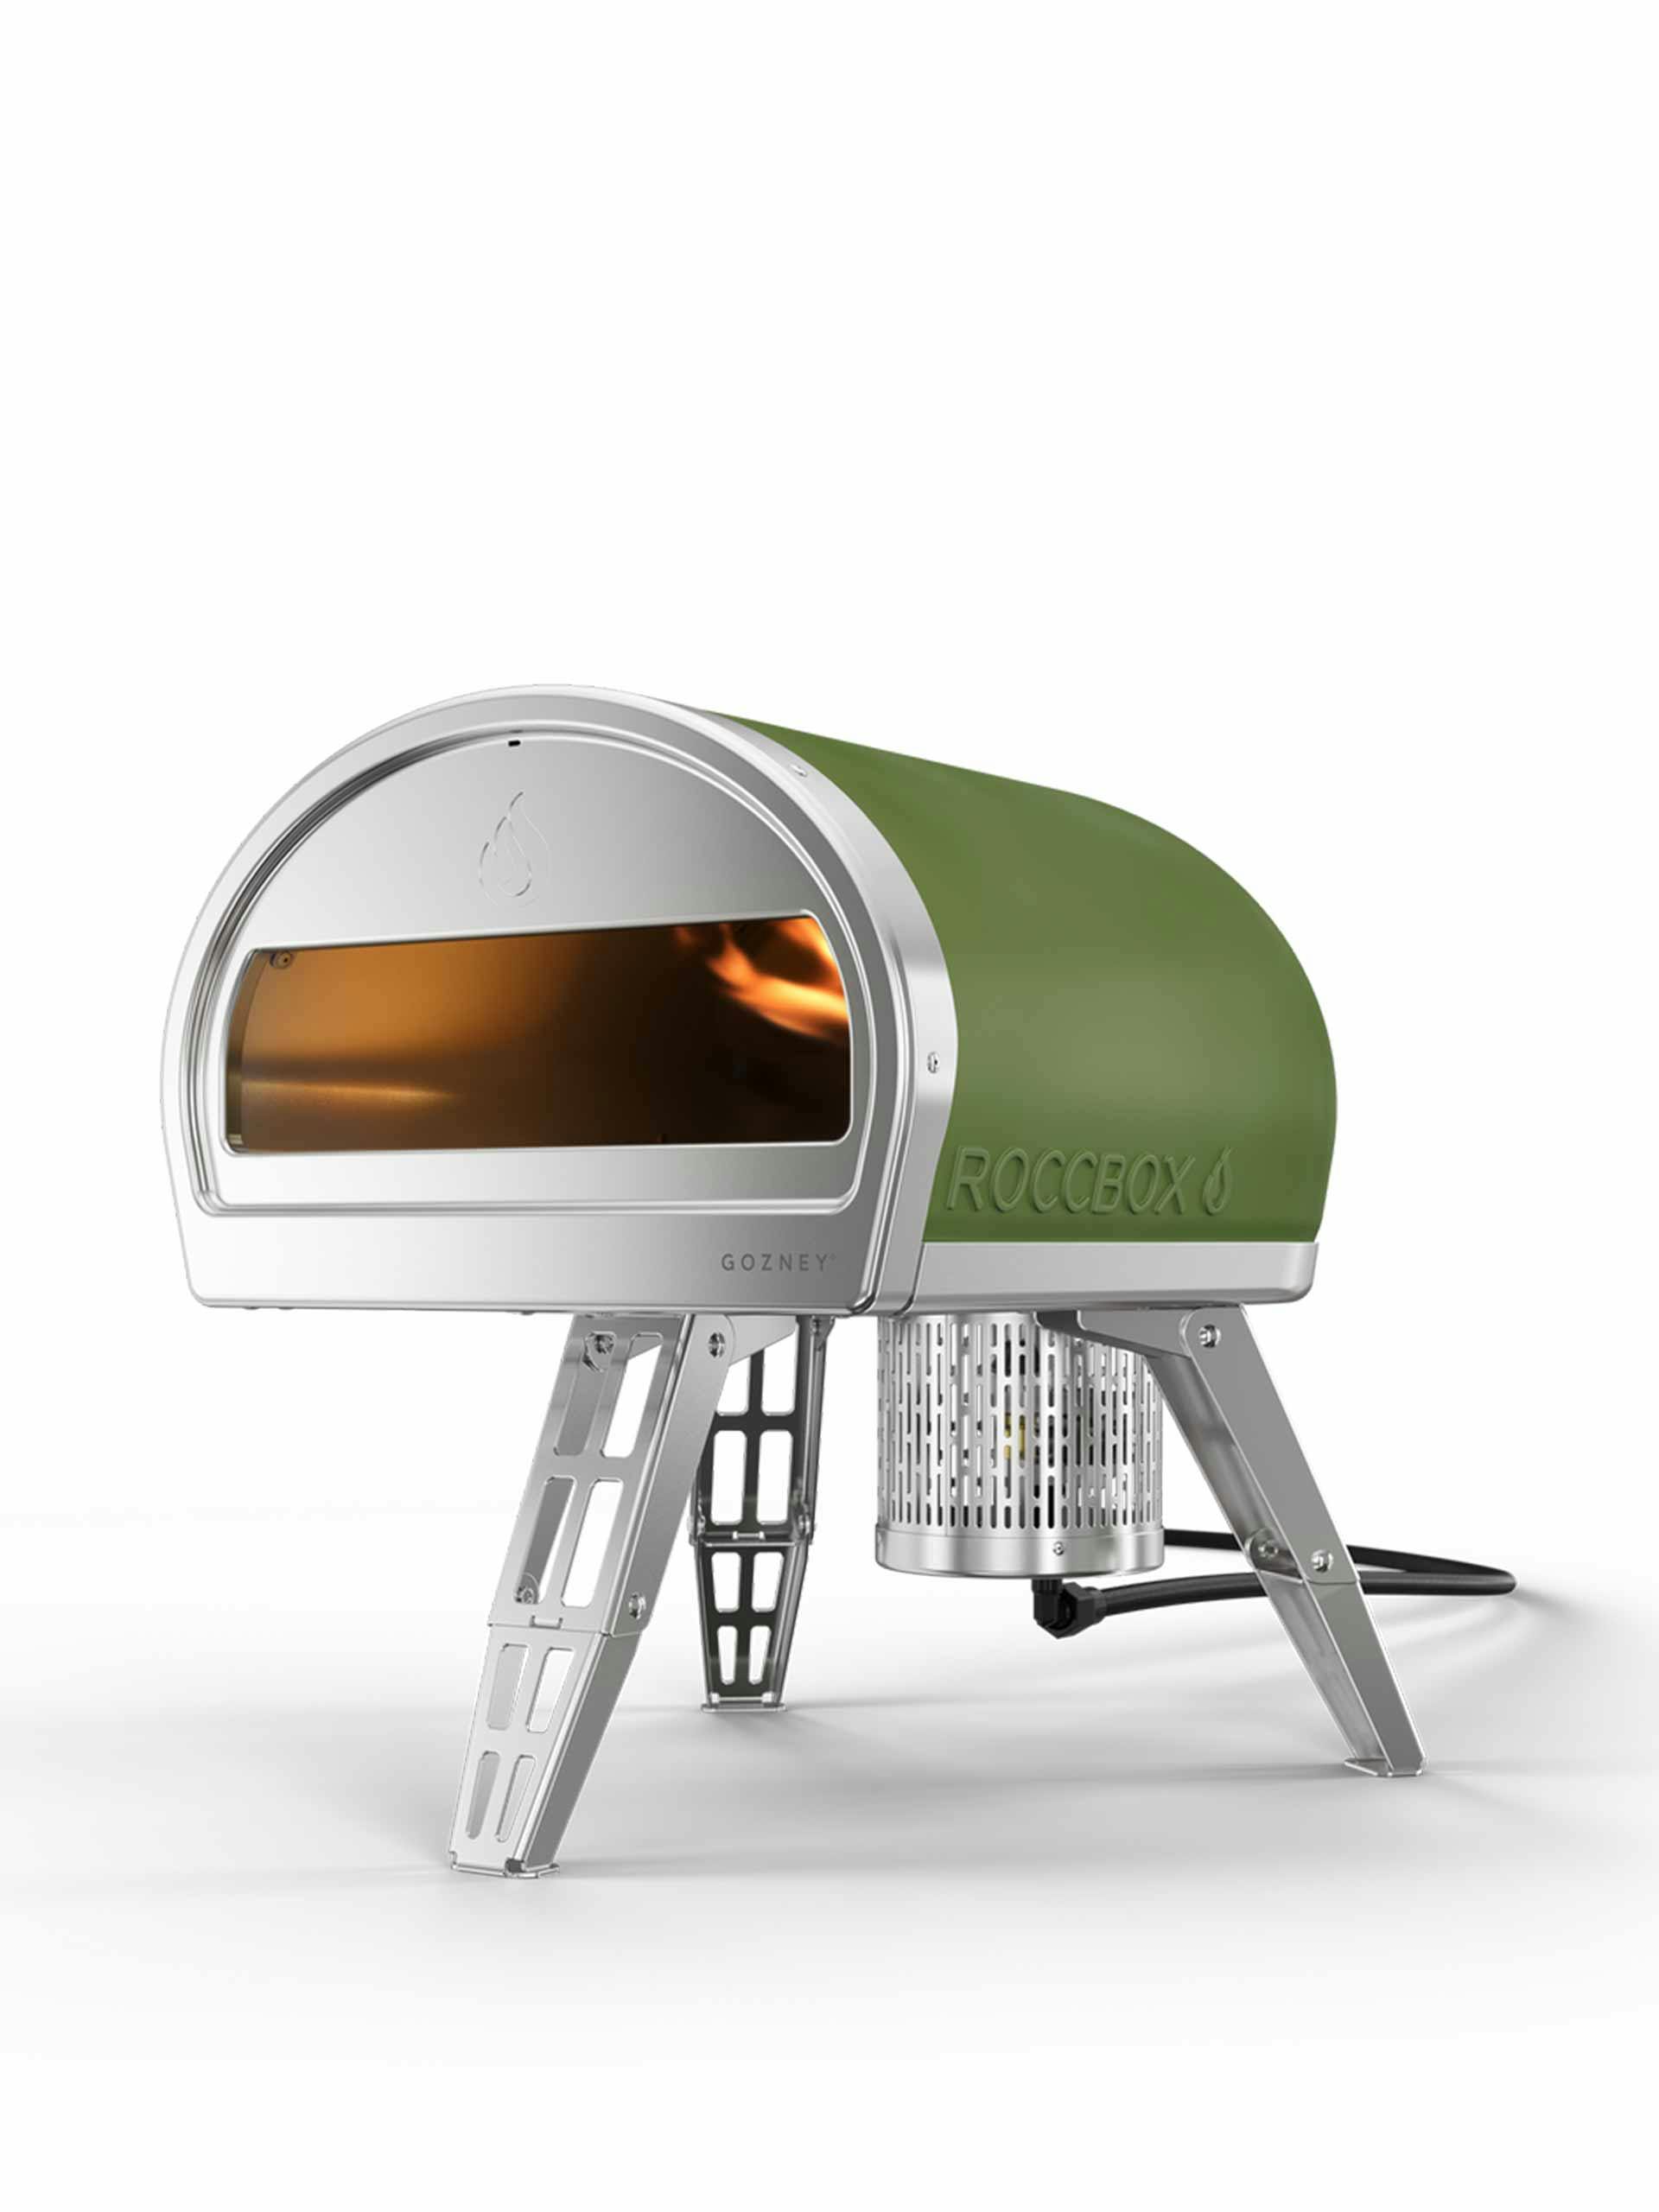 Portable pizza oven